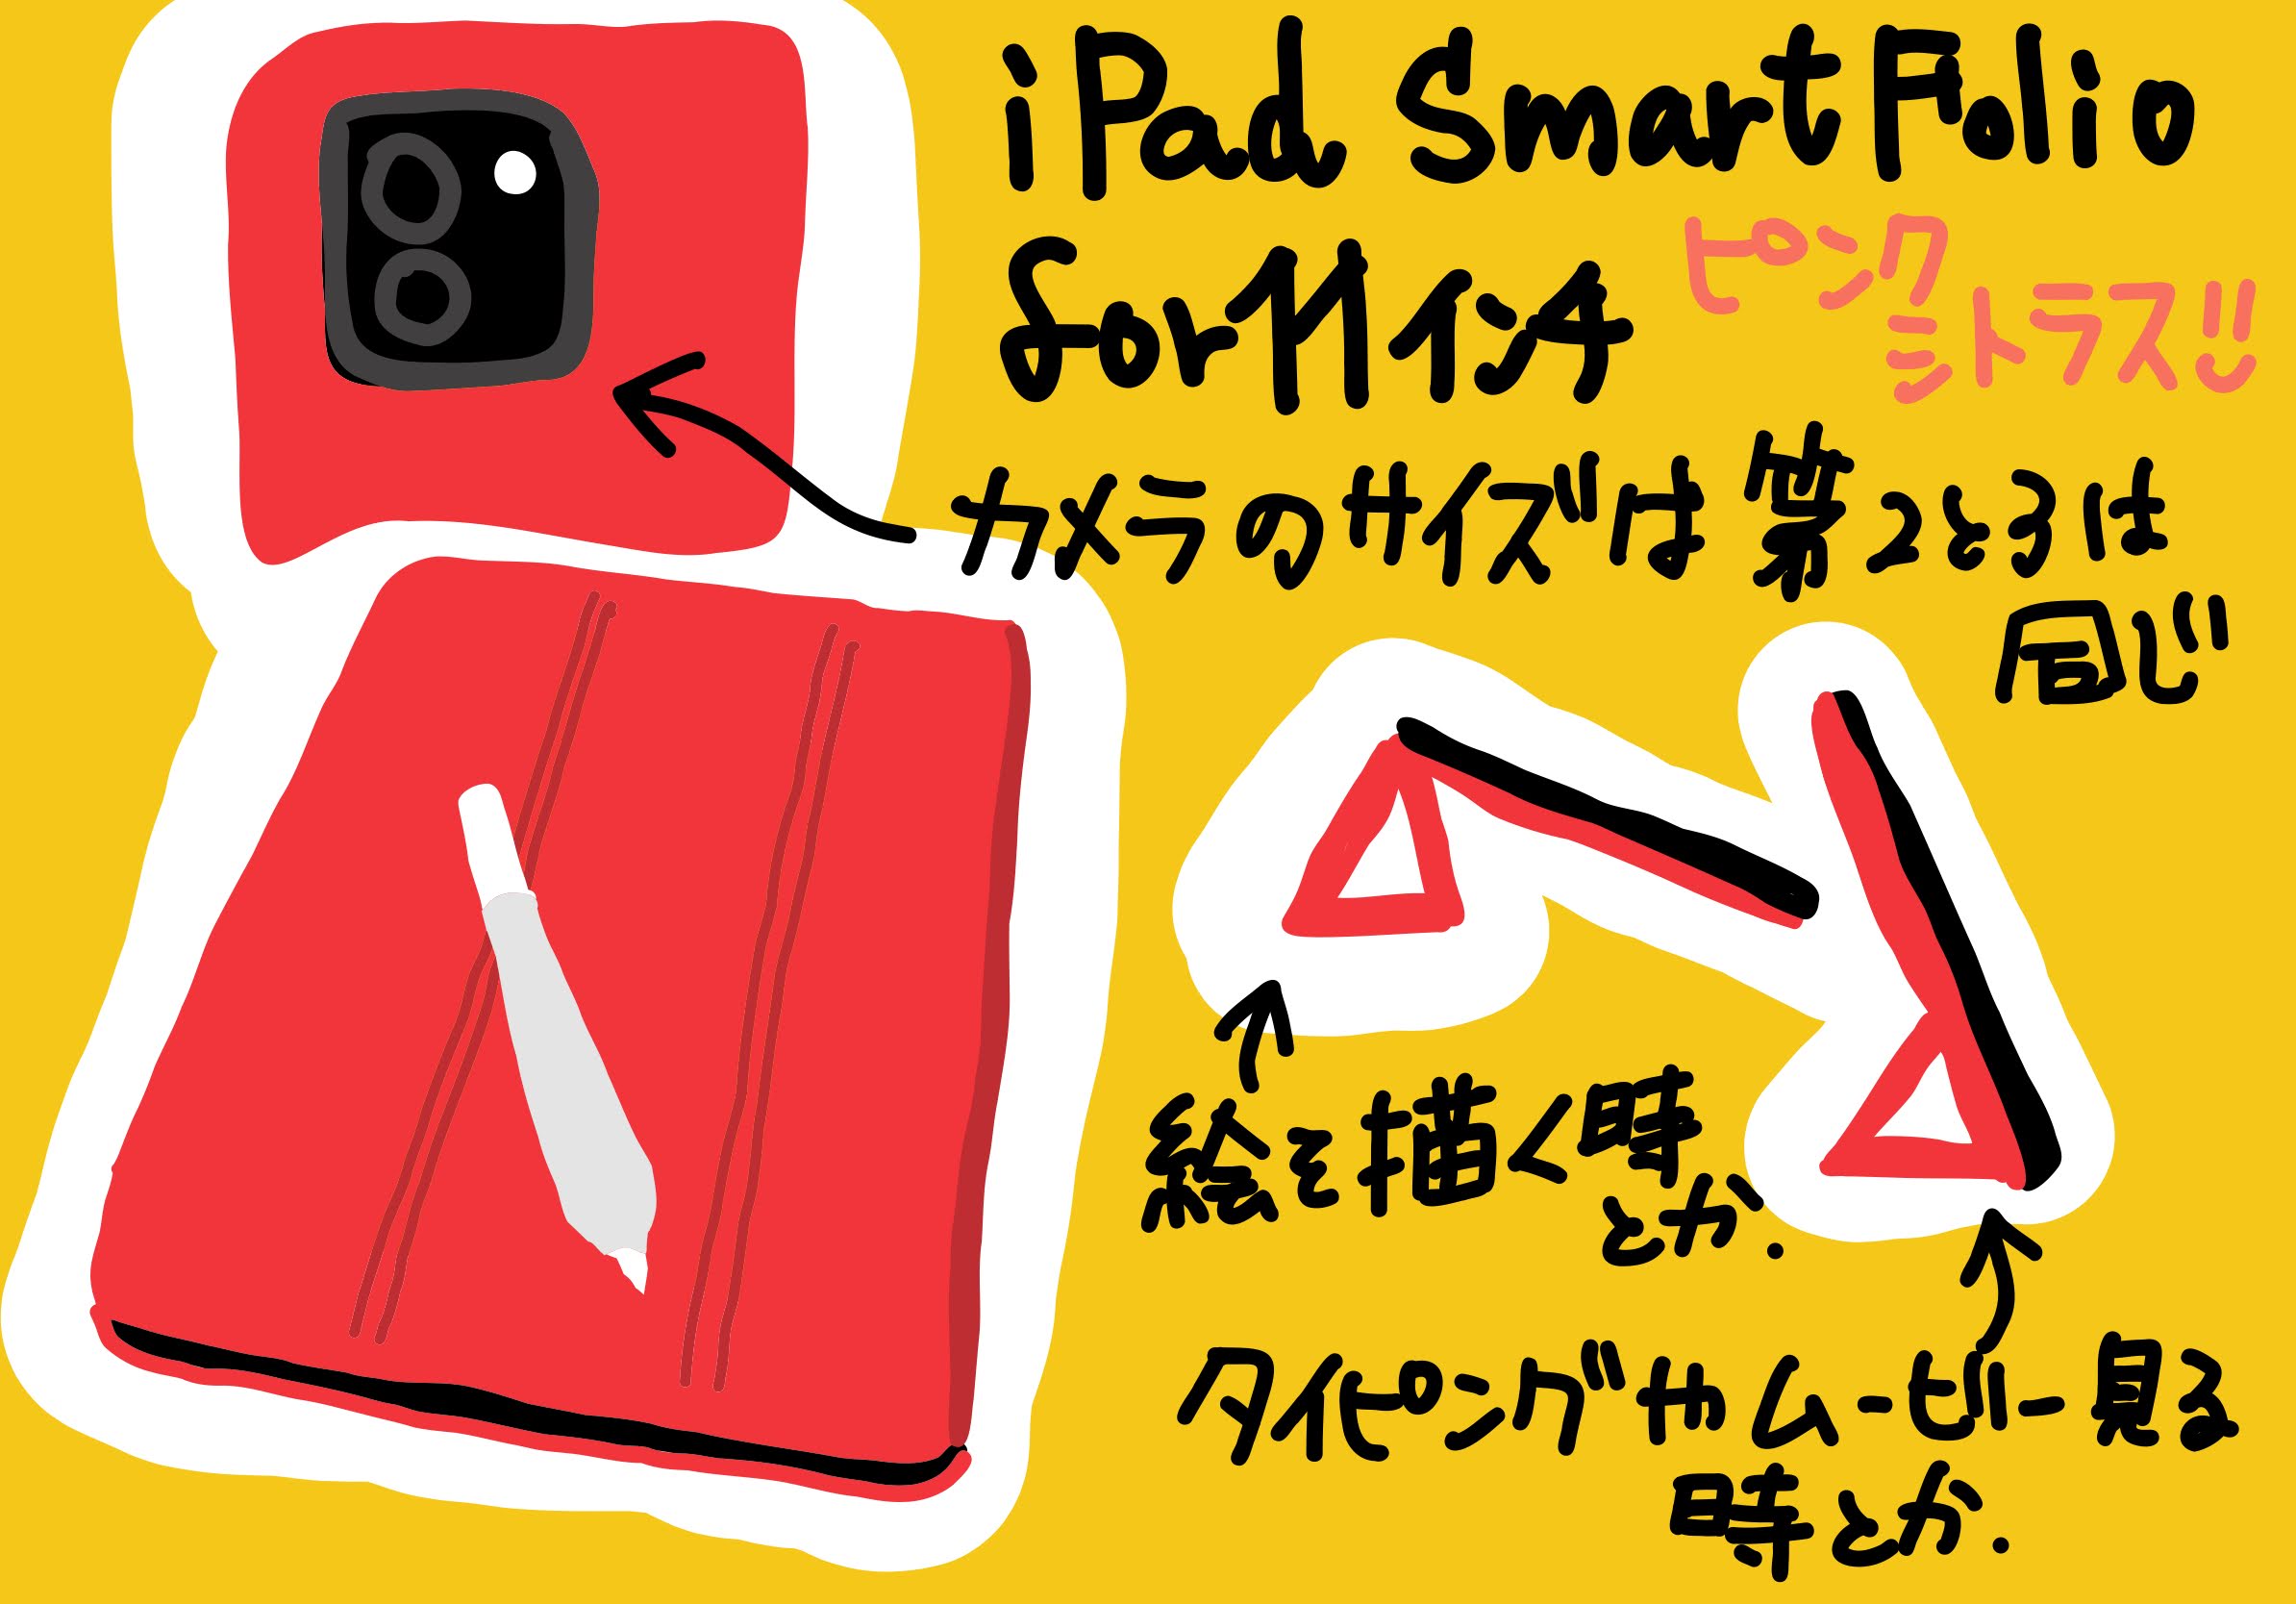 iPad Pro 11 インチ用 Smart Folio カバーは 第二世代と第三世代は互換性あり